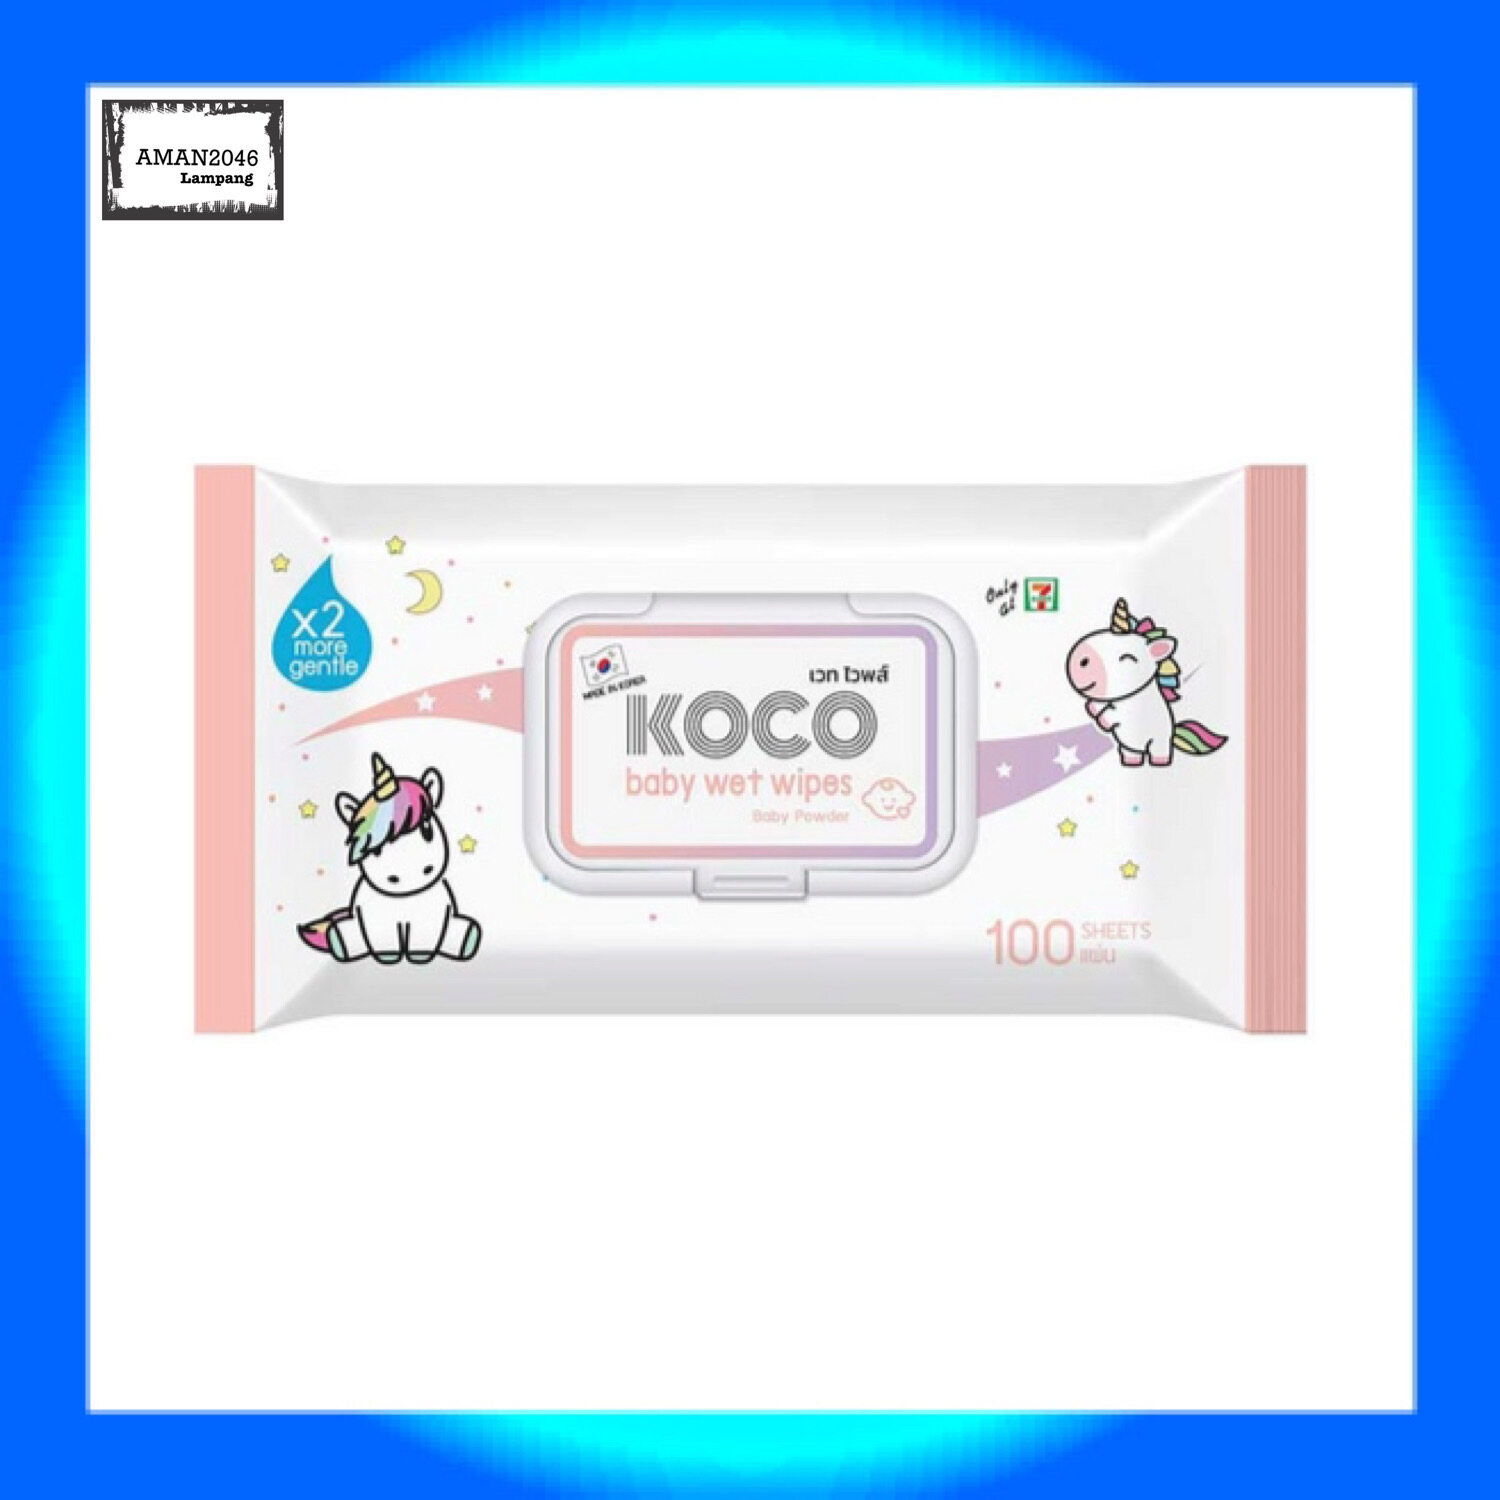 โคโค่ ผ้าเปียก Koco Baby Wibes ทิชชู่เปียก สูตรอ่อนโยน 2 เท่า  นำเข้าจากประเทศเกาหลี  ปริมาณ 100 แผ่น จำนวน 1 แพ๊ค  สูตร กลิ่นแป้งเด็ก